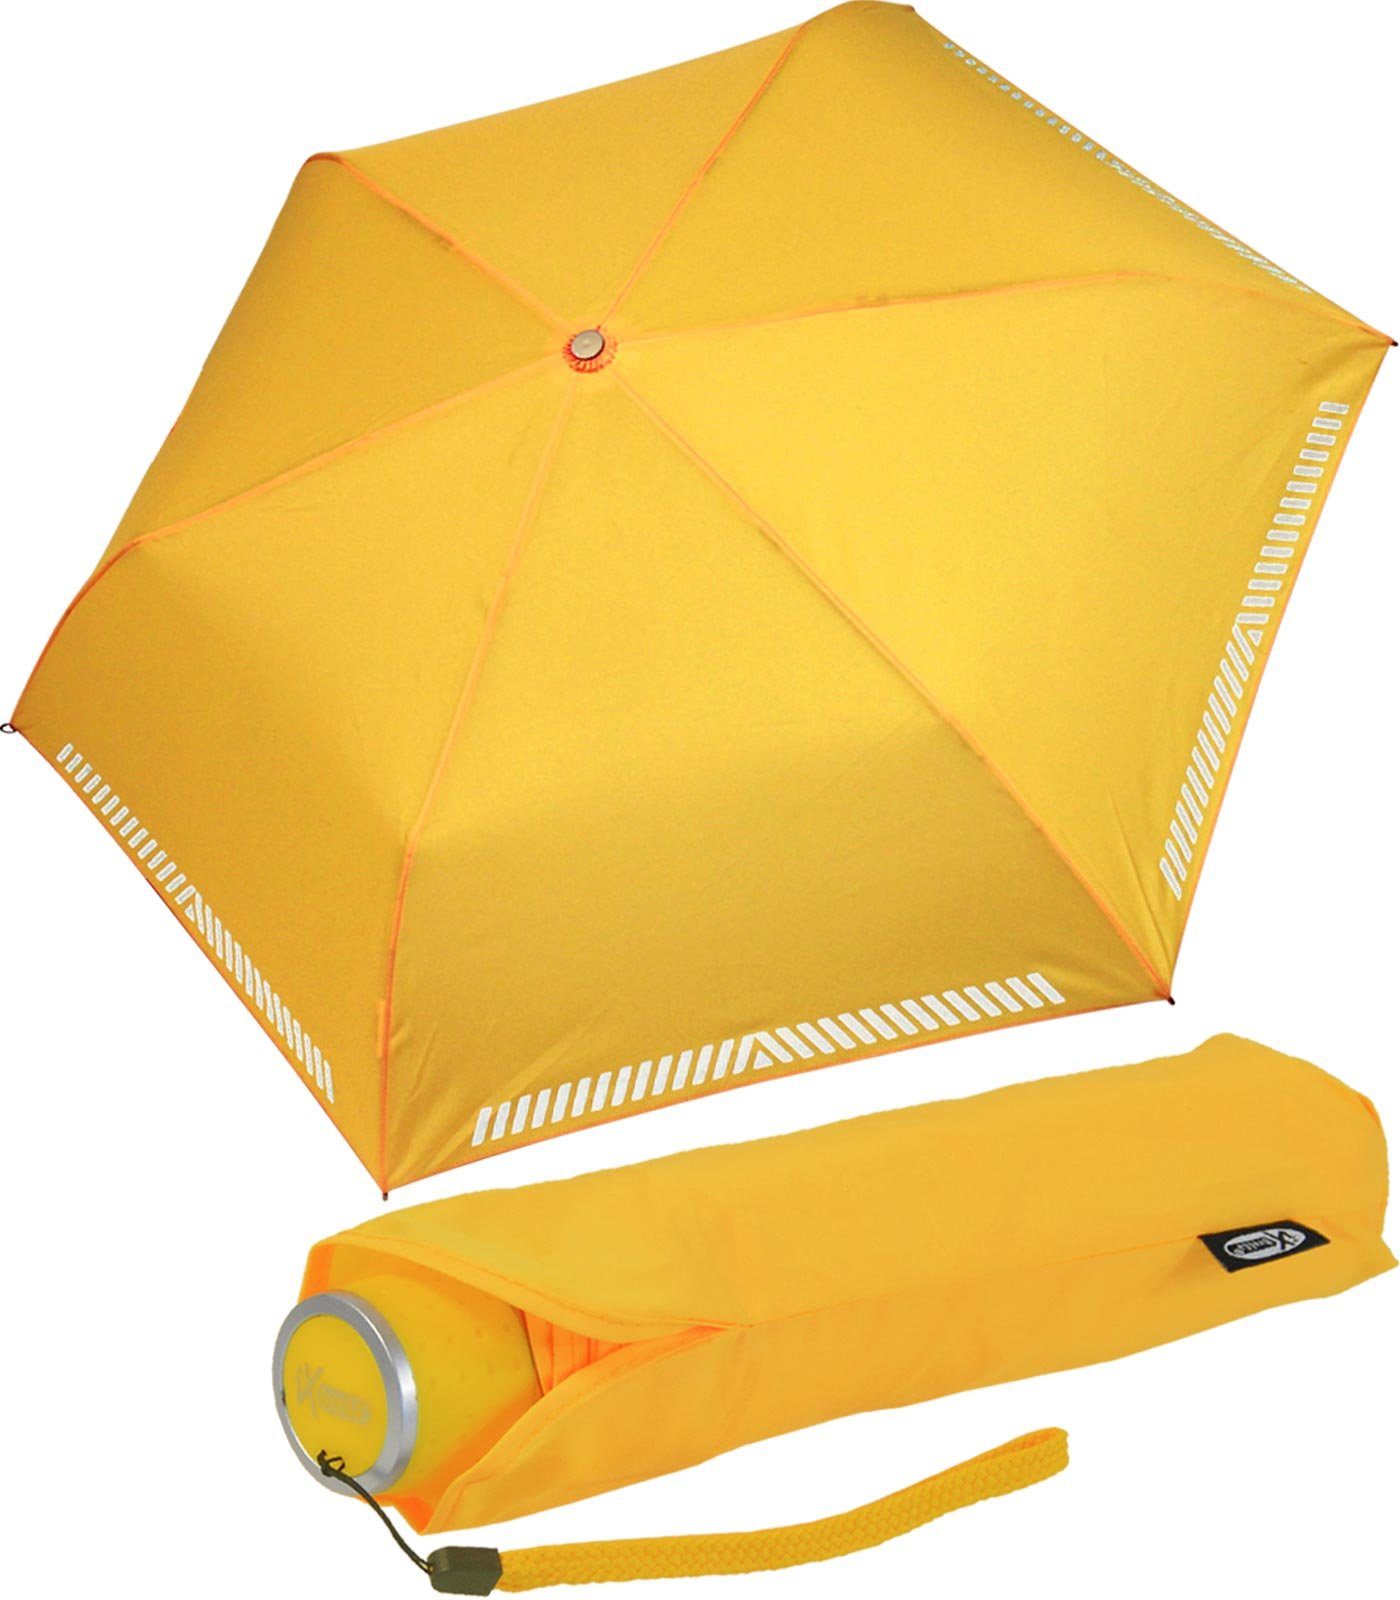 iX-brella Taschenregenschirm Mini Kinderschirm neon-gelb extra reflektierend leicht, Safety Reflex